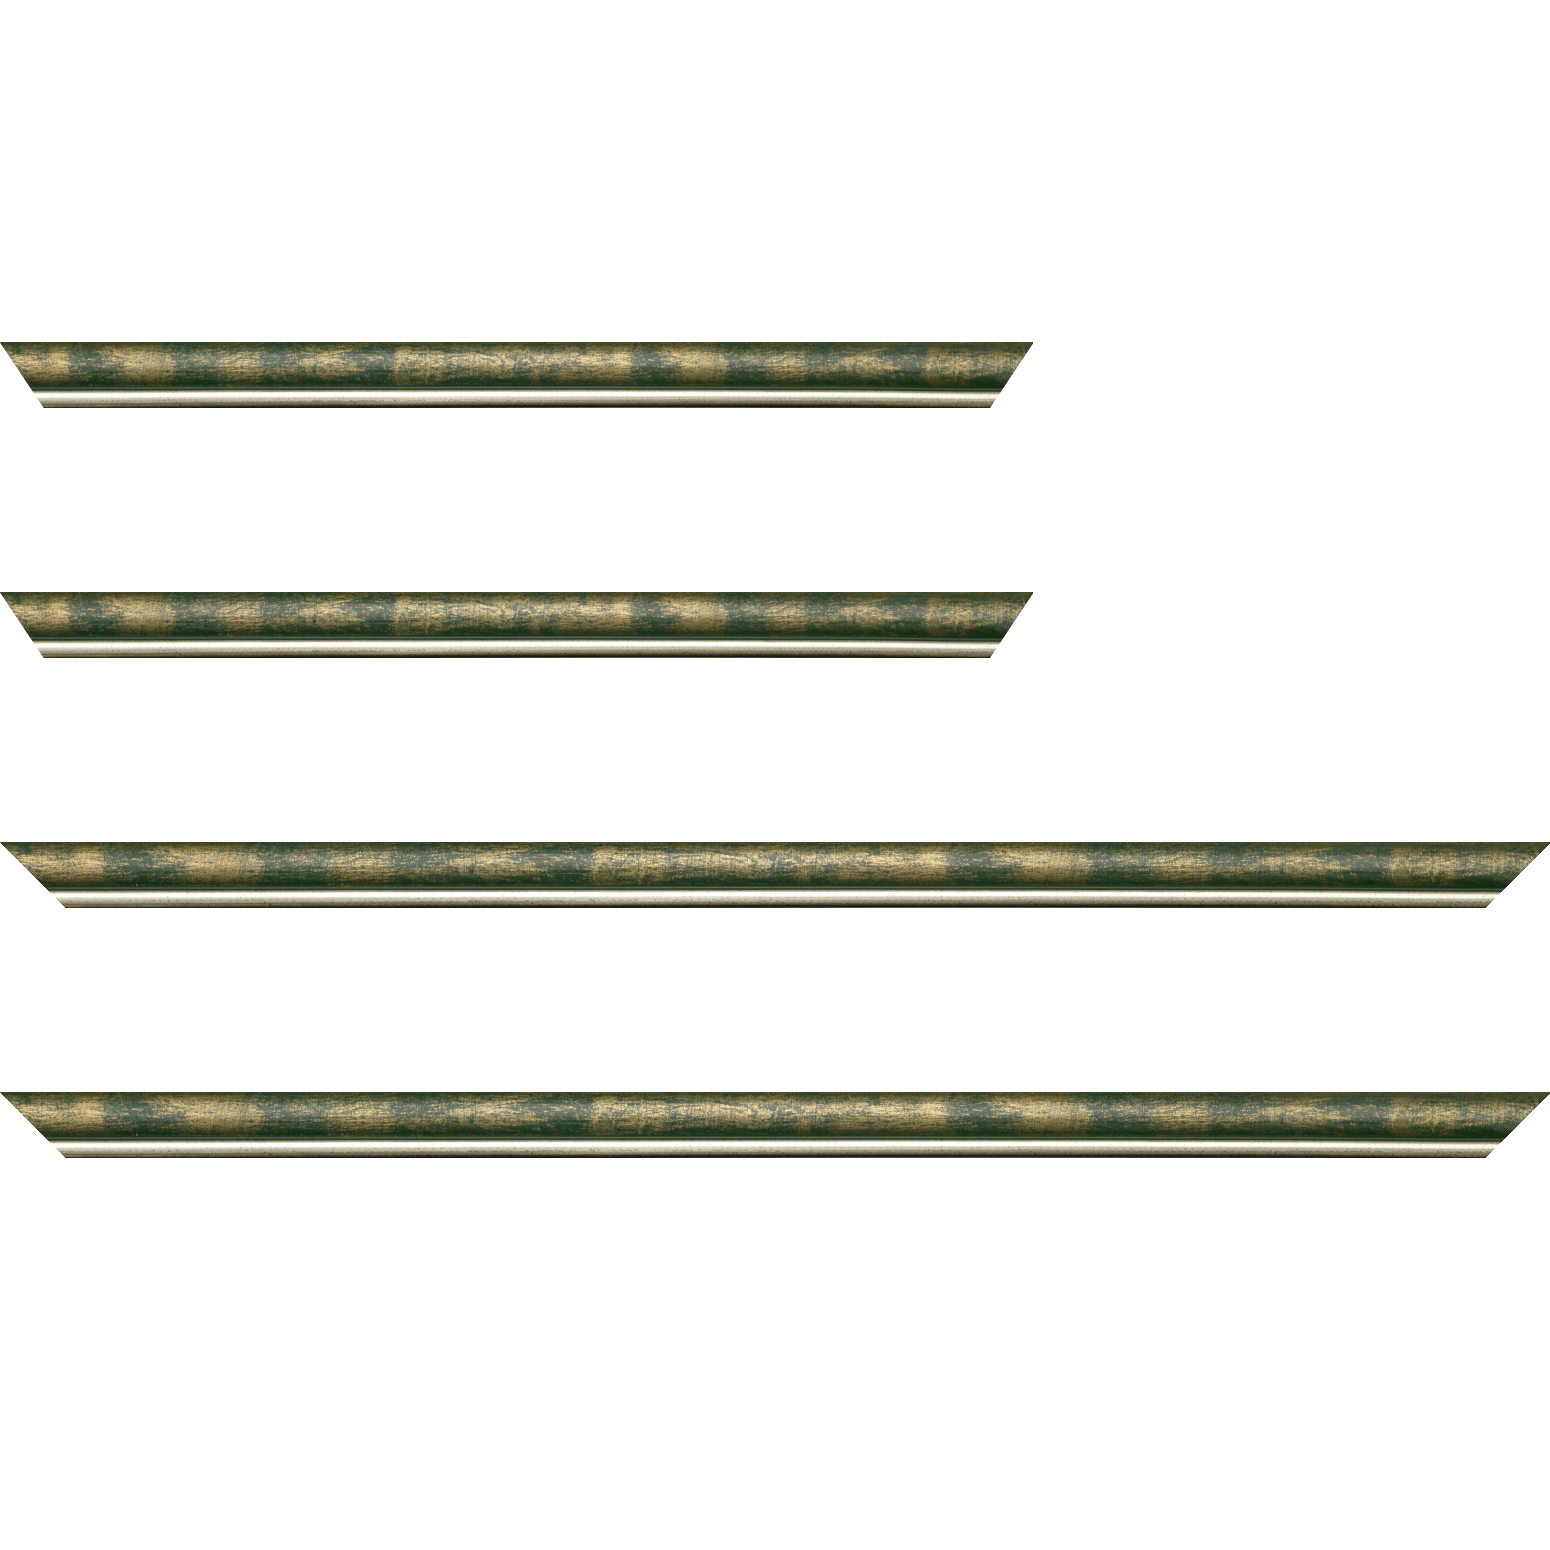 Baguette bois profil arrondi largeur 2.1cm  couleur vert fond or filet argent chaud - 28x34